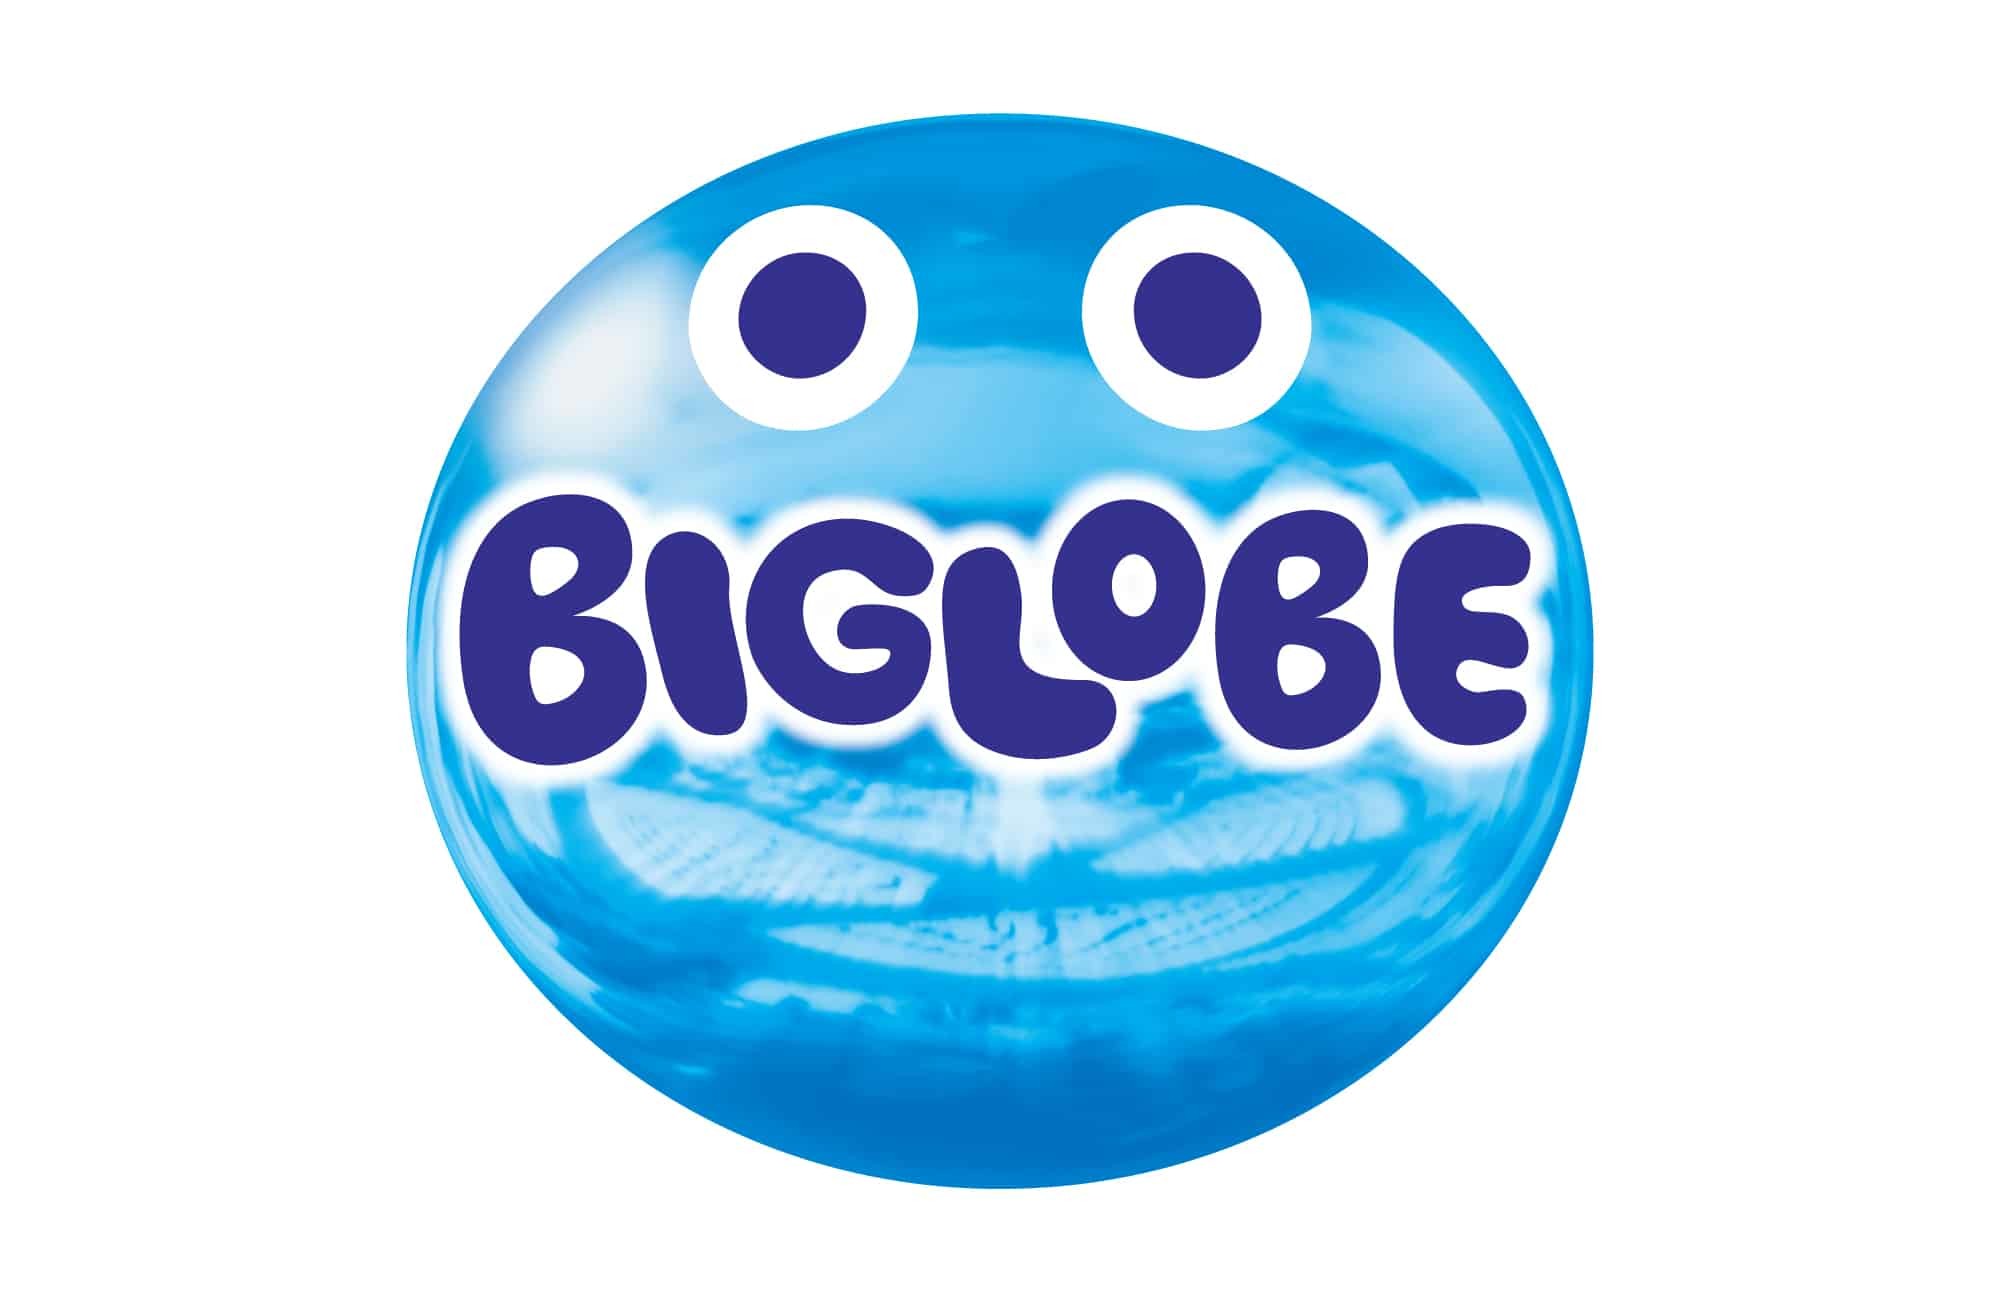 Biglobeが会員向けアプリを提供 料金明細や通信利用料の確認やチャージも対応 Goisblog